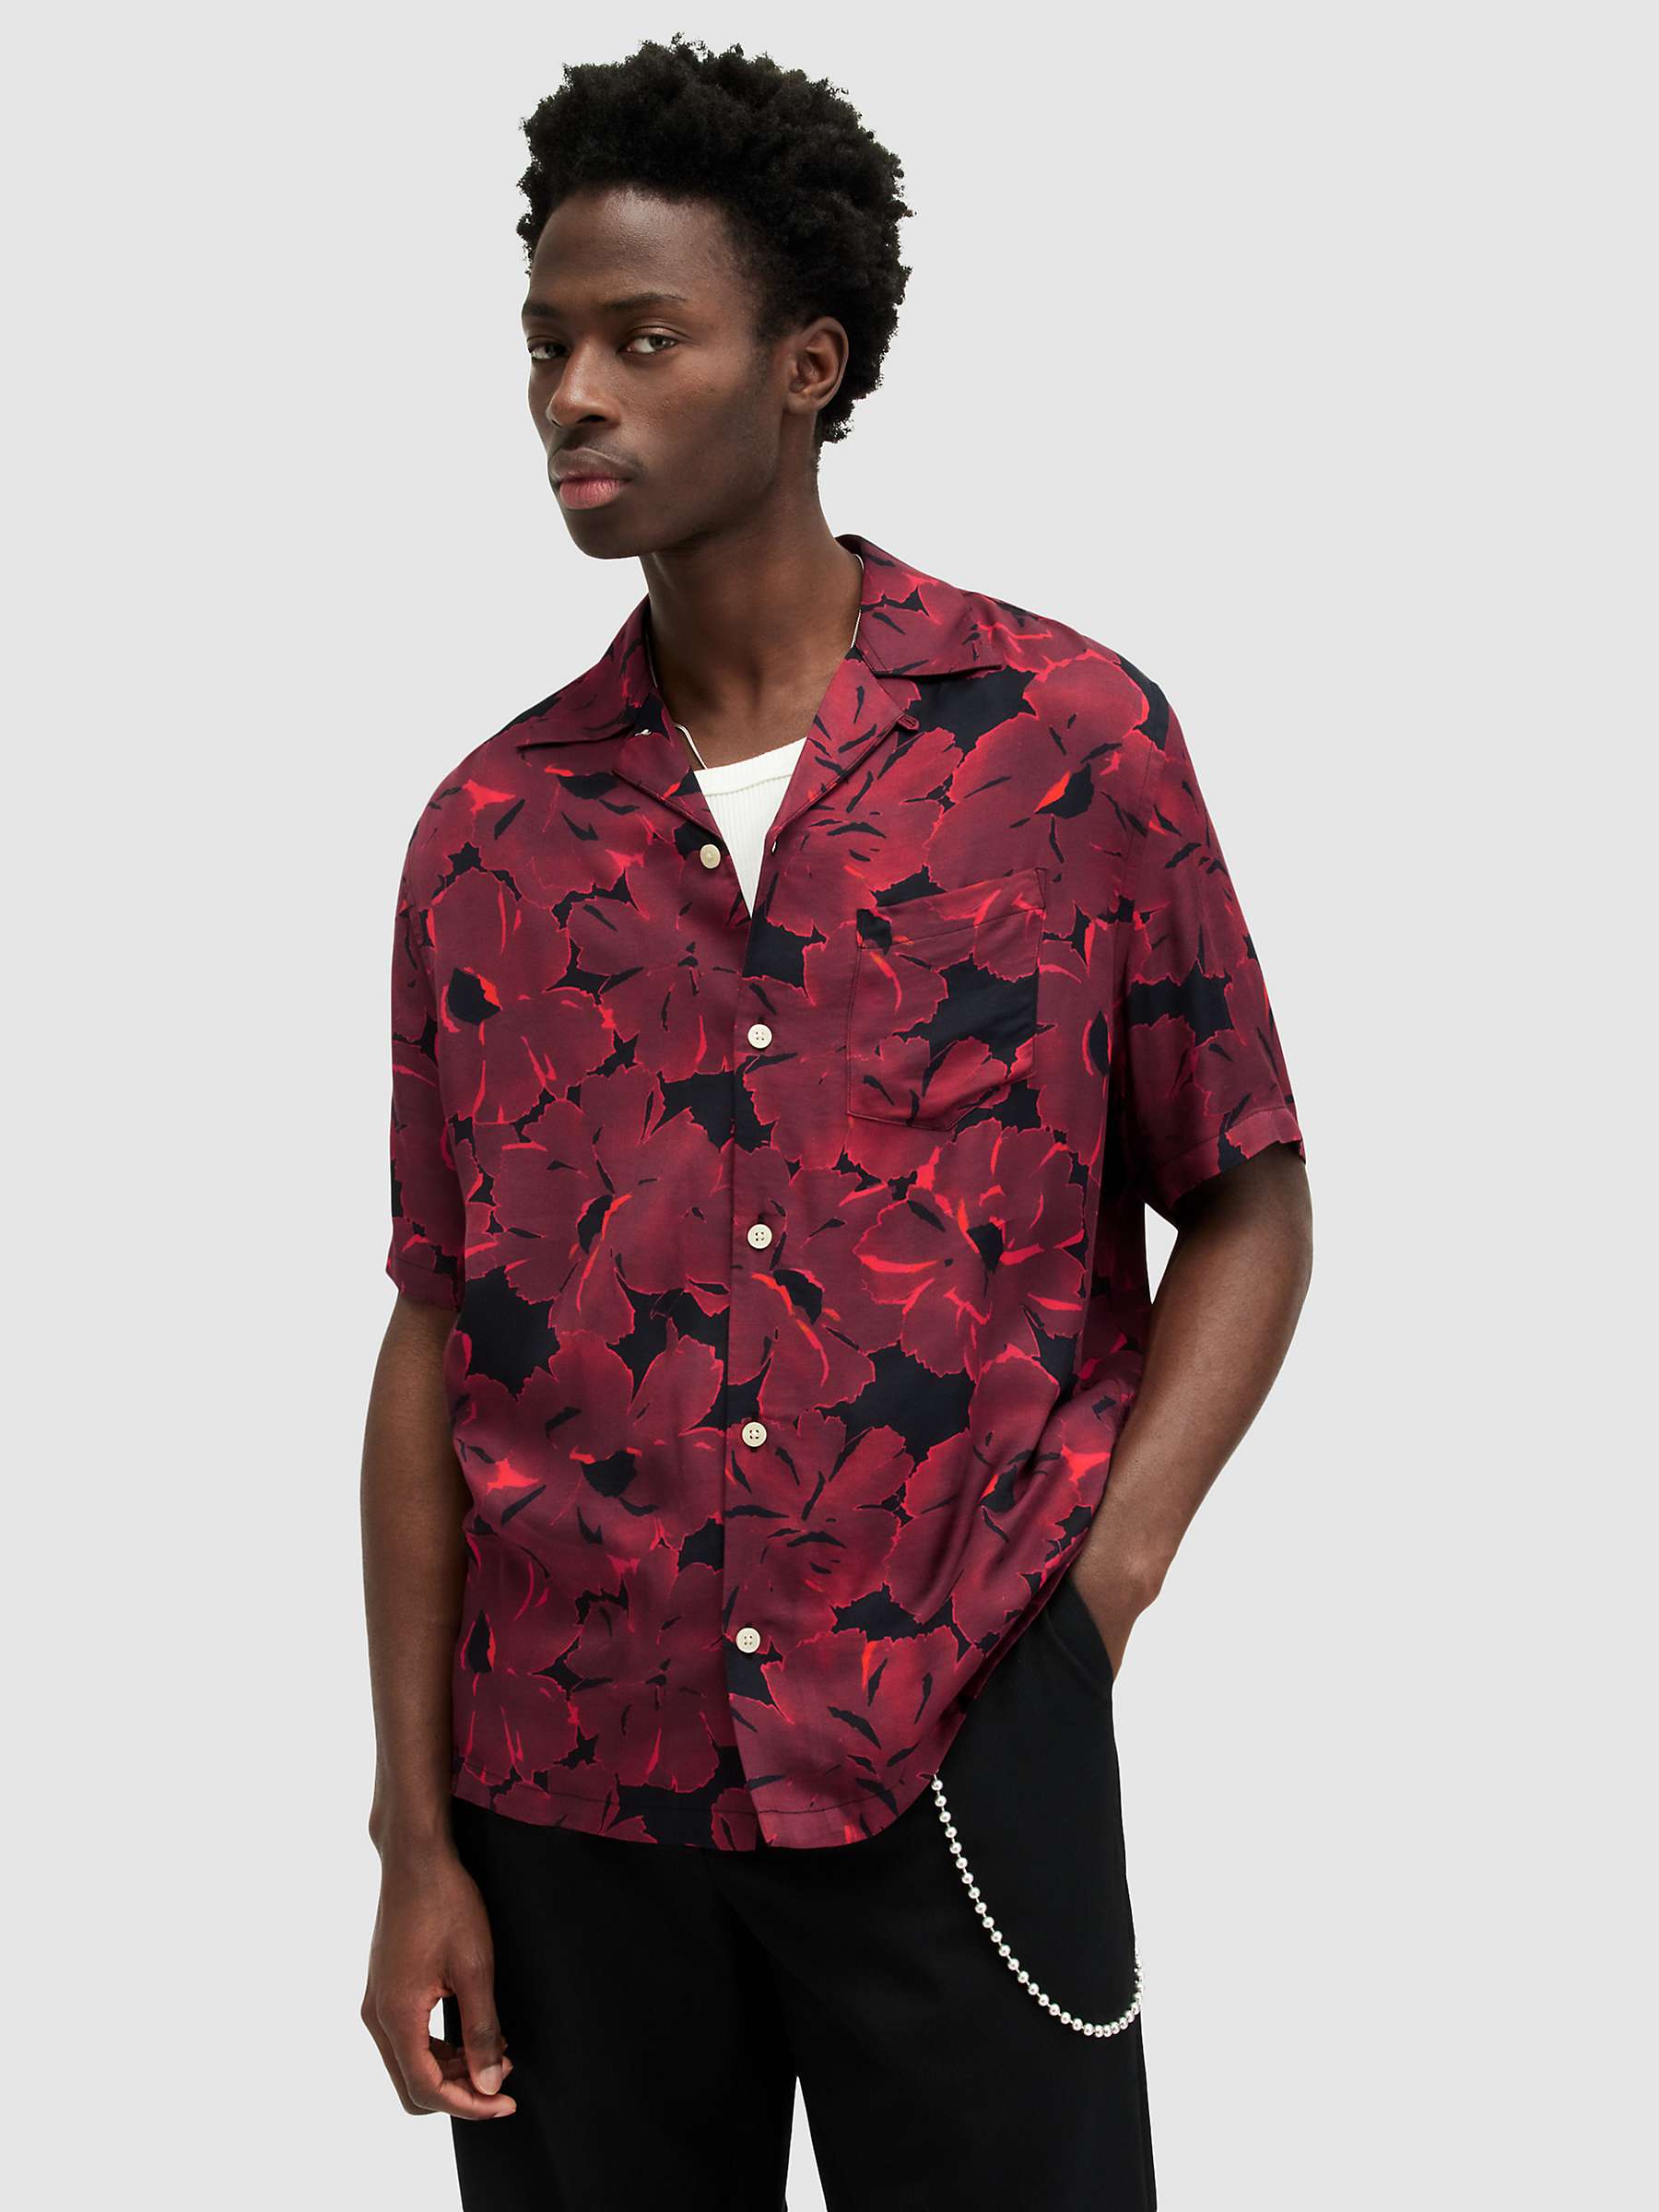 Buy AllSaints Kaza Short Sleeved T-Shirt, Jet Black/Sangria Red Online at johnlewis.com